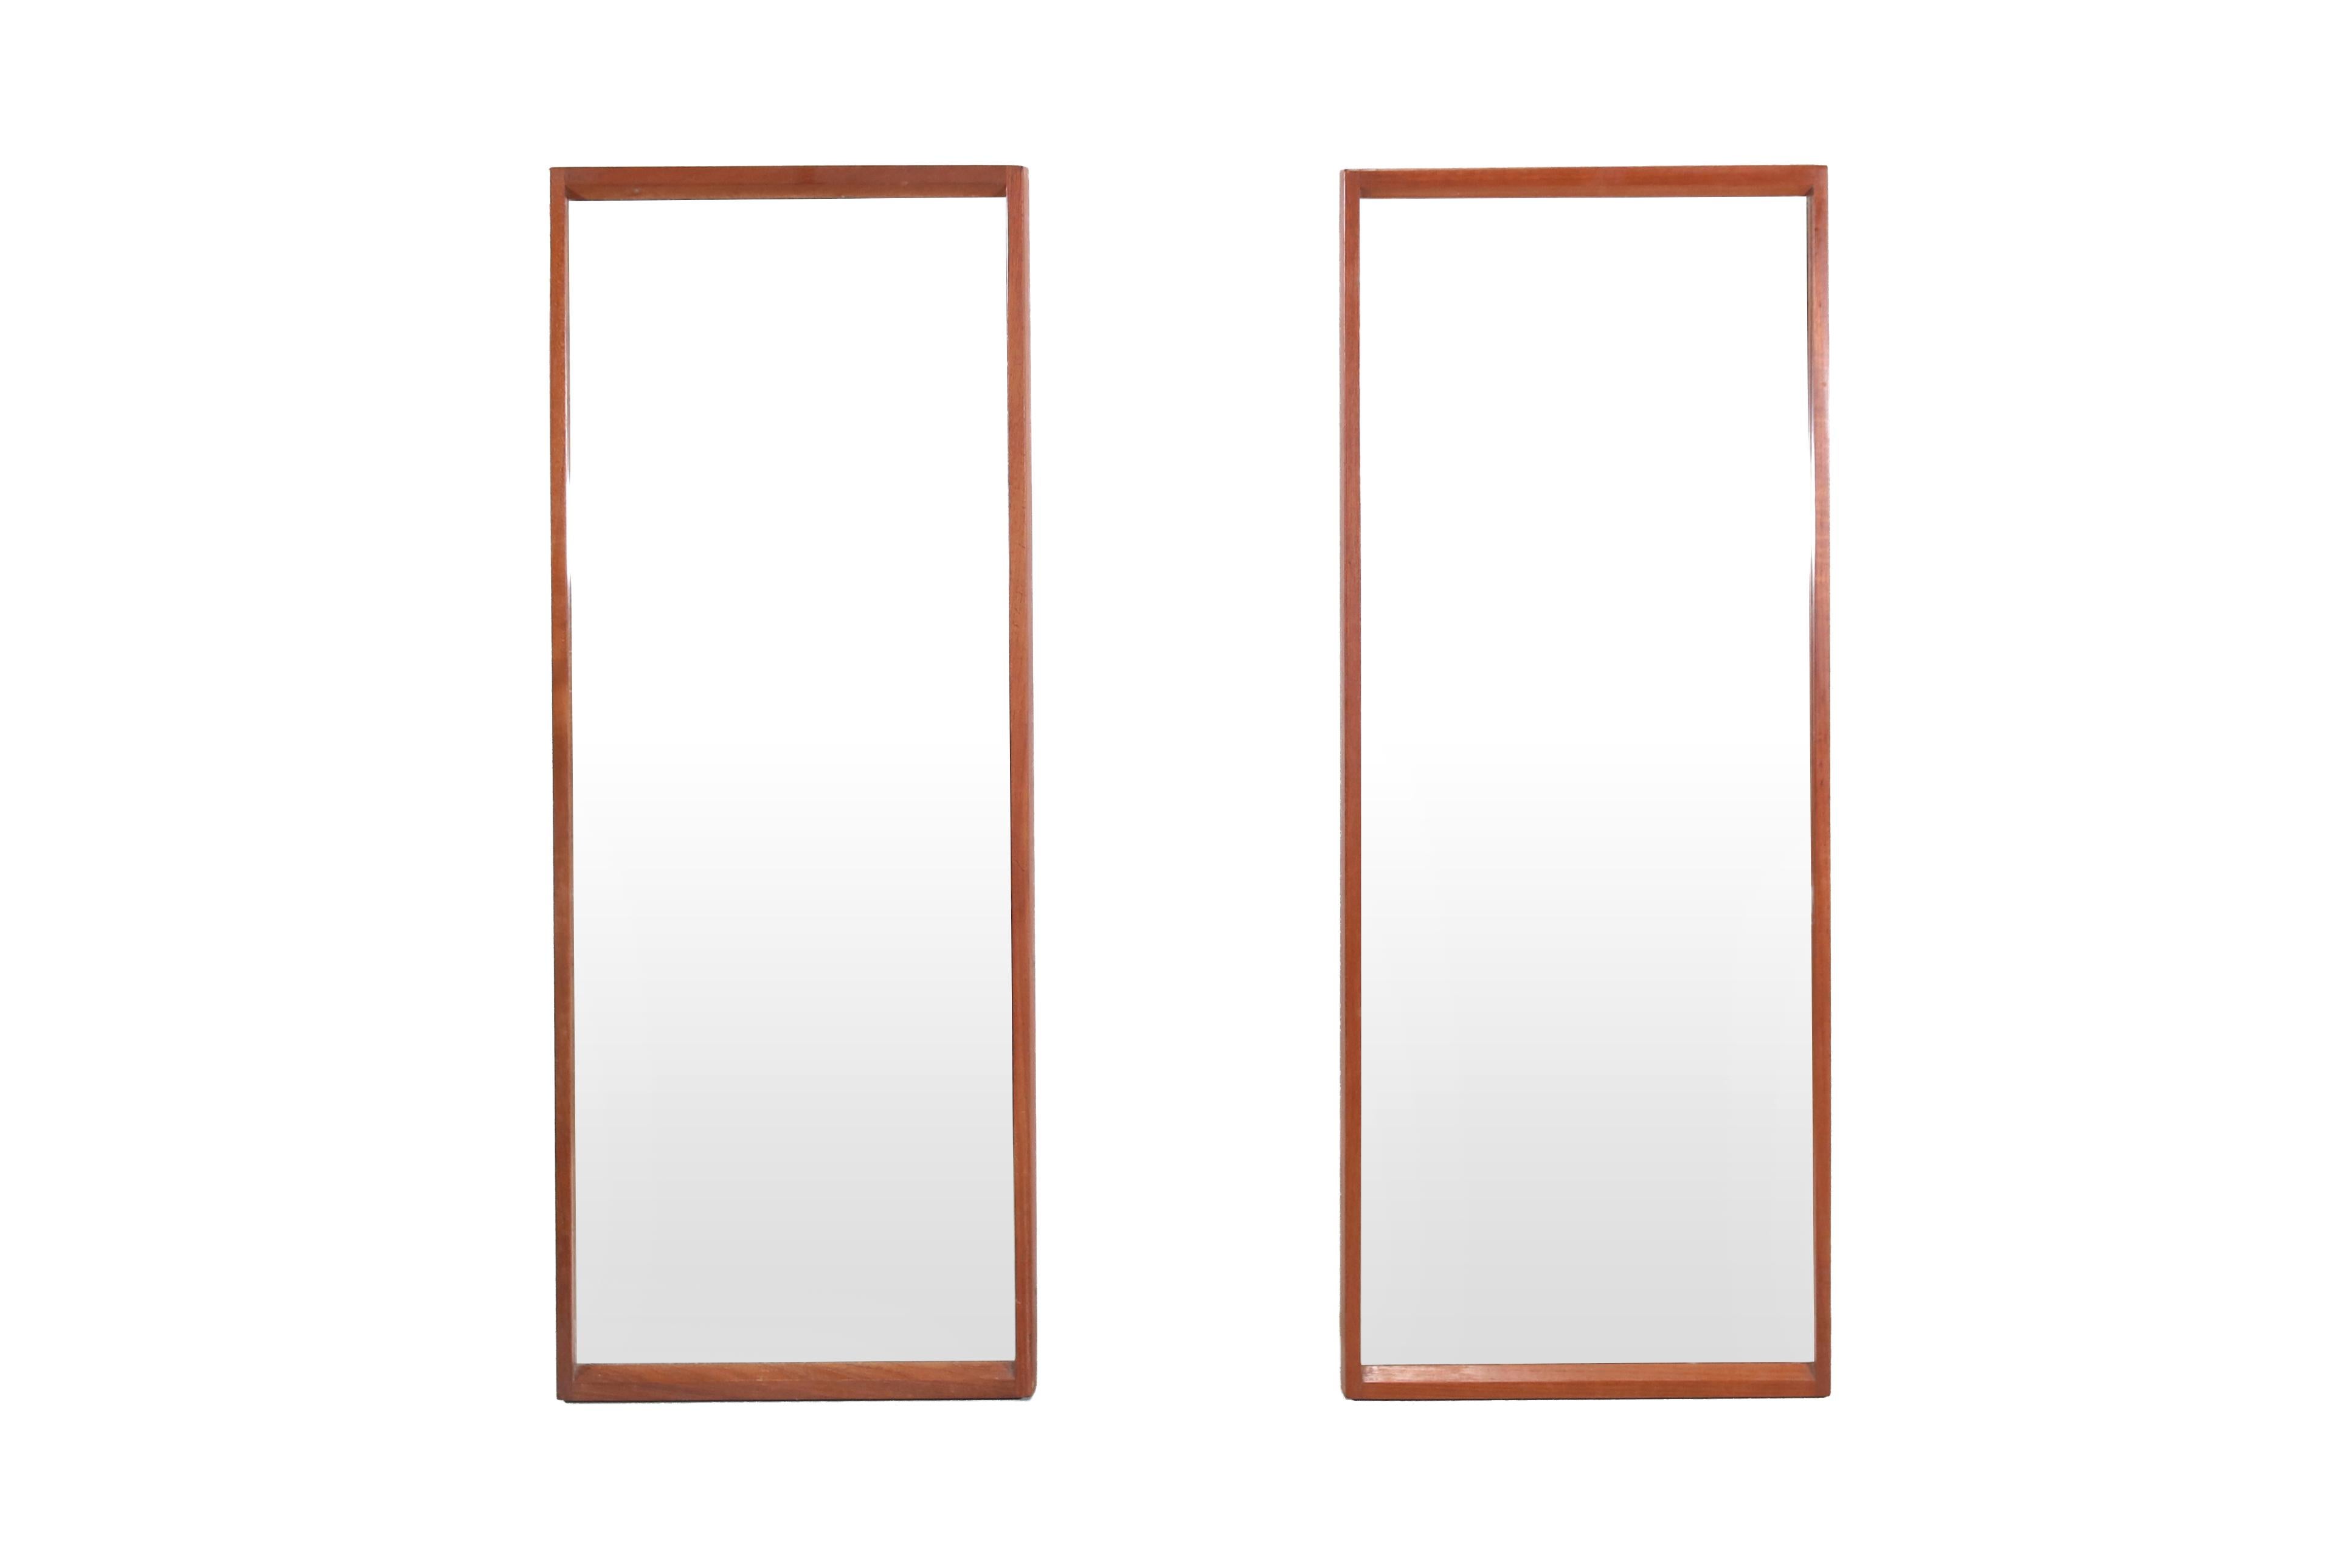 Sehr schöner Satz von zwei Spiegeln aus massivem Teakholz, entworfen von Kai Kristiansen und hergestellt von Aksel Kjersgaard in Odder Dänemark. Diese Spiegel sind auf der Rückseite beschriftet und haben fantastische Details. Zum Beispiel hat dieser